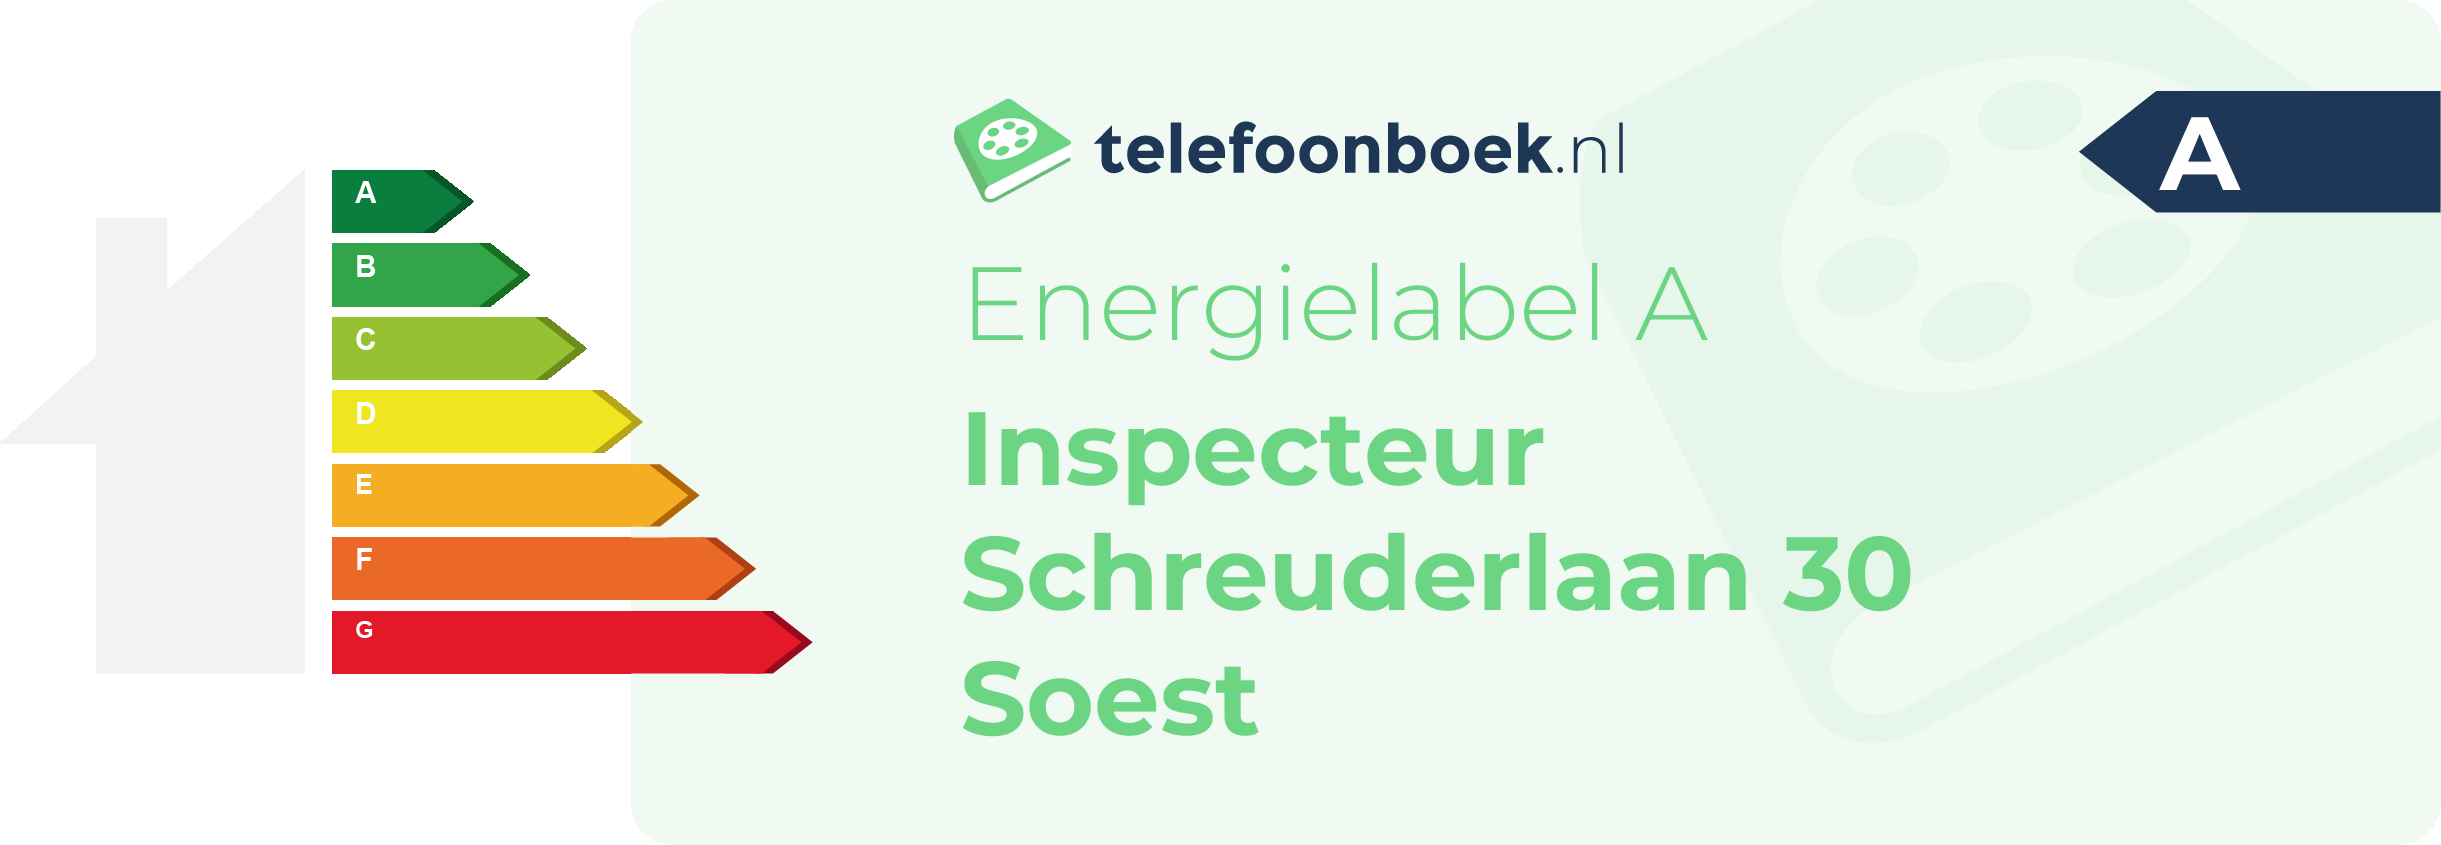 Energielabel Inspecteur Schreuderlaan 30 Soest